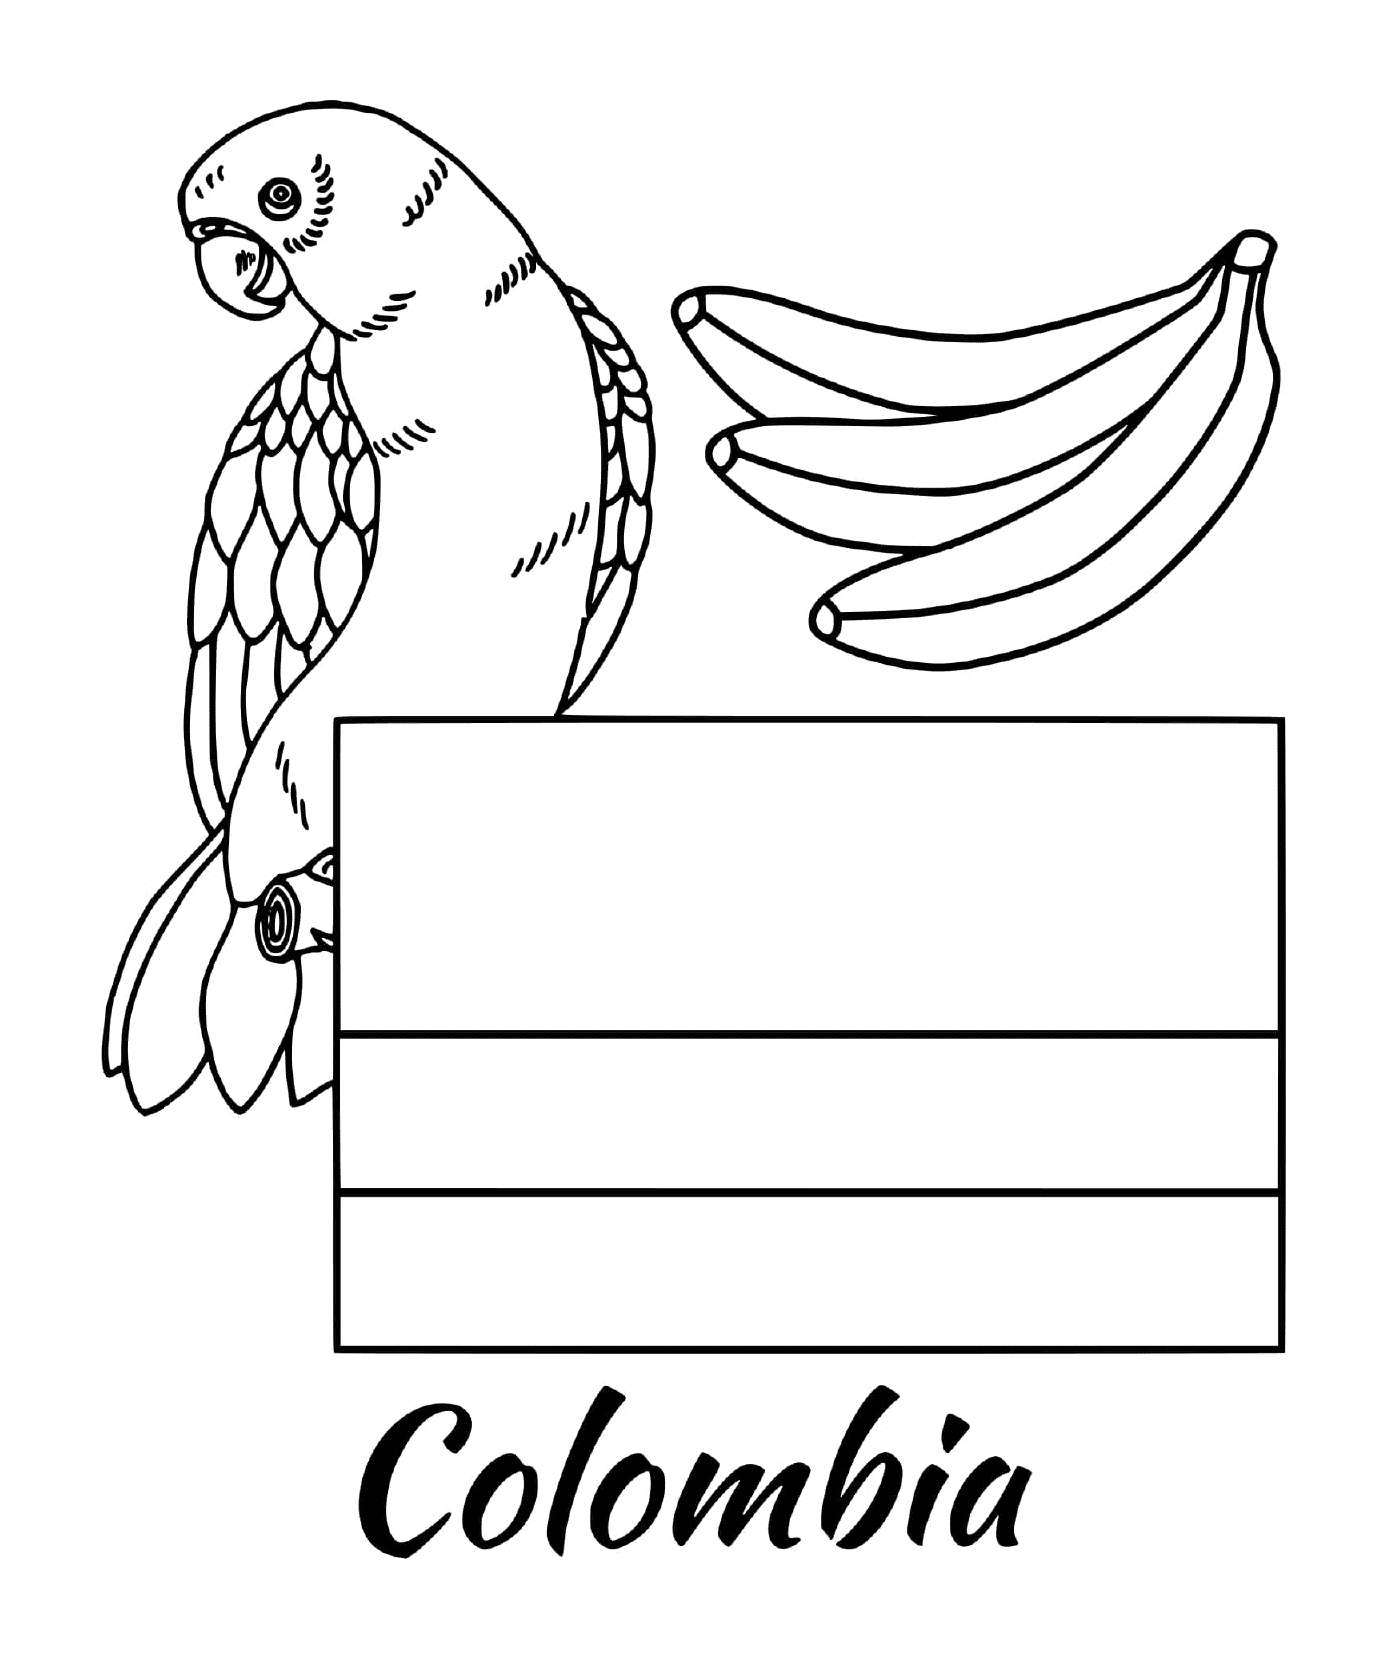  Bandeira da Colômbia, papagaio 